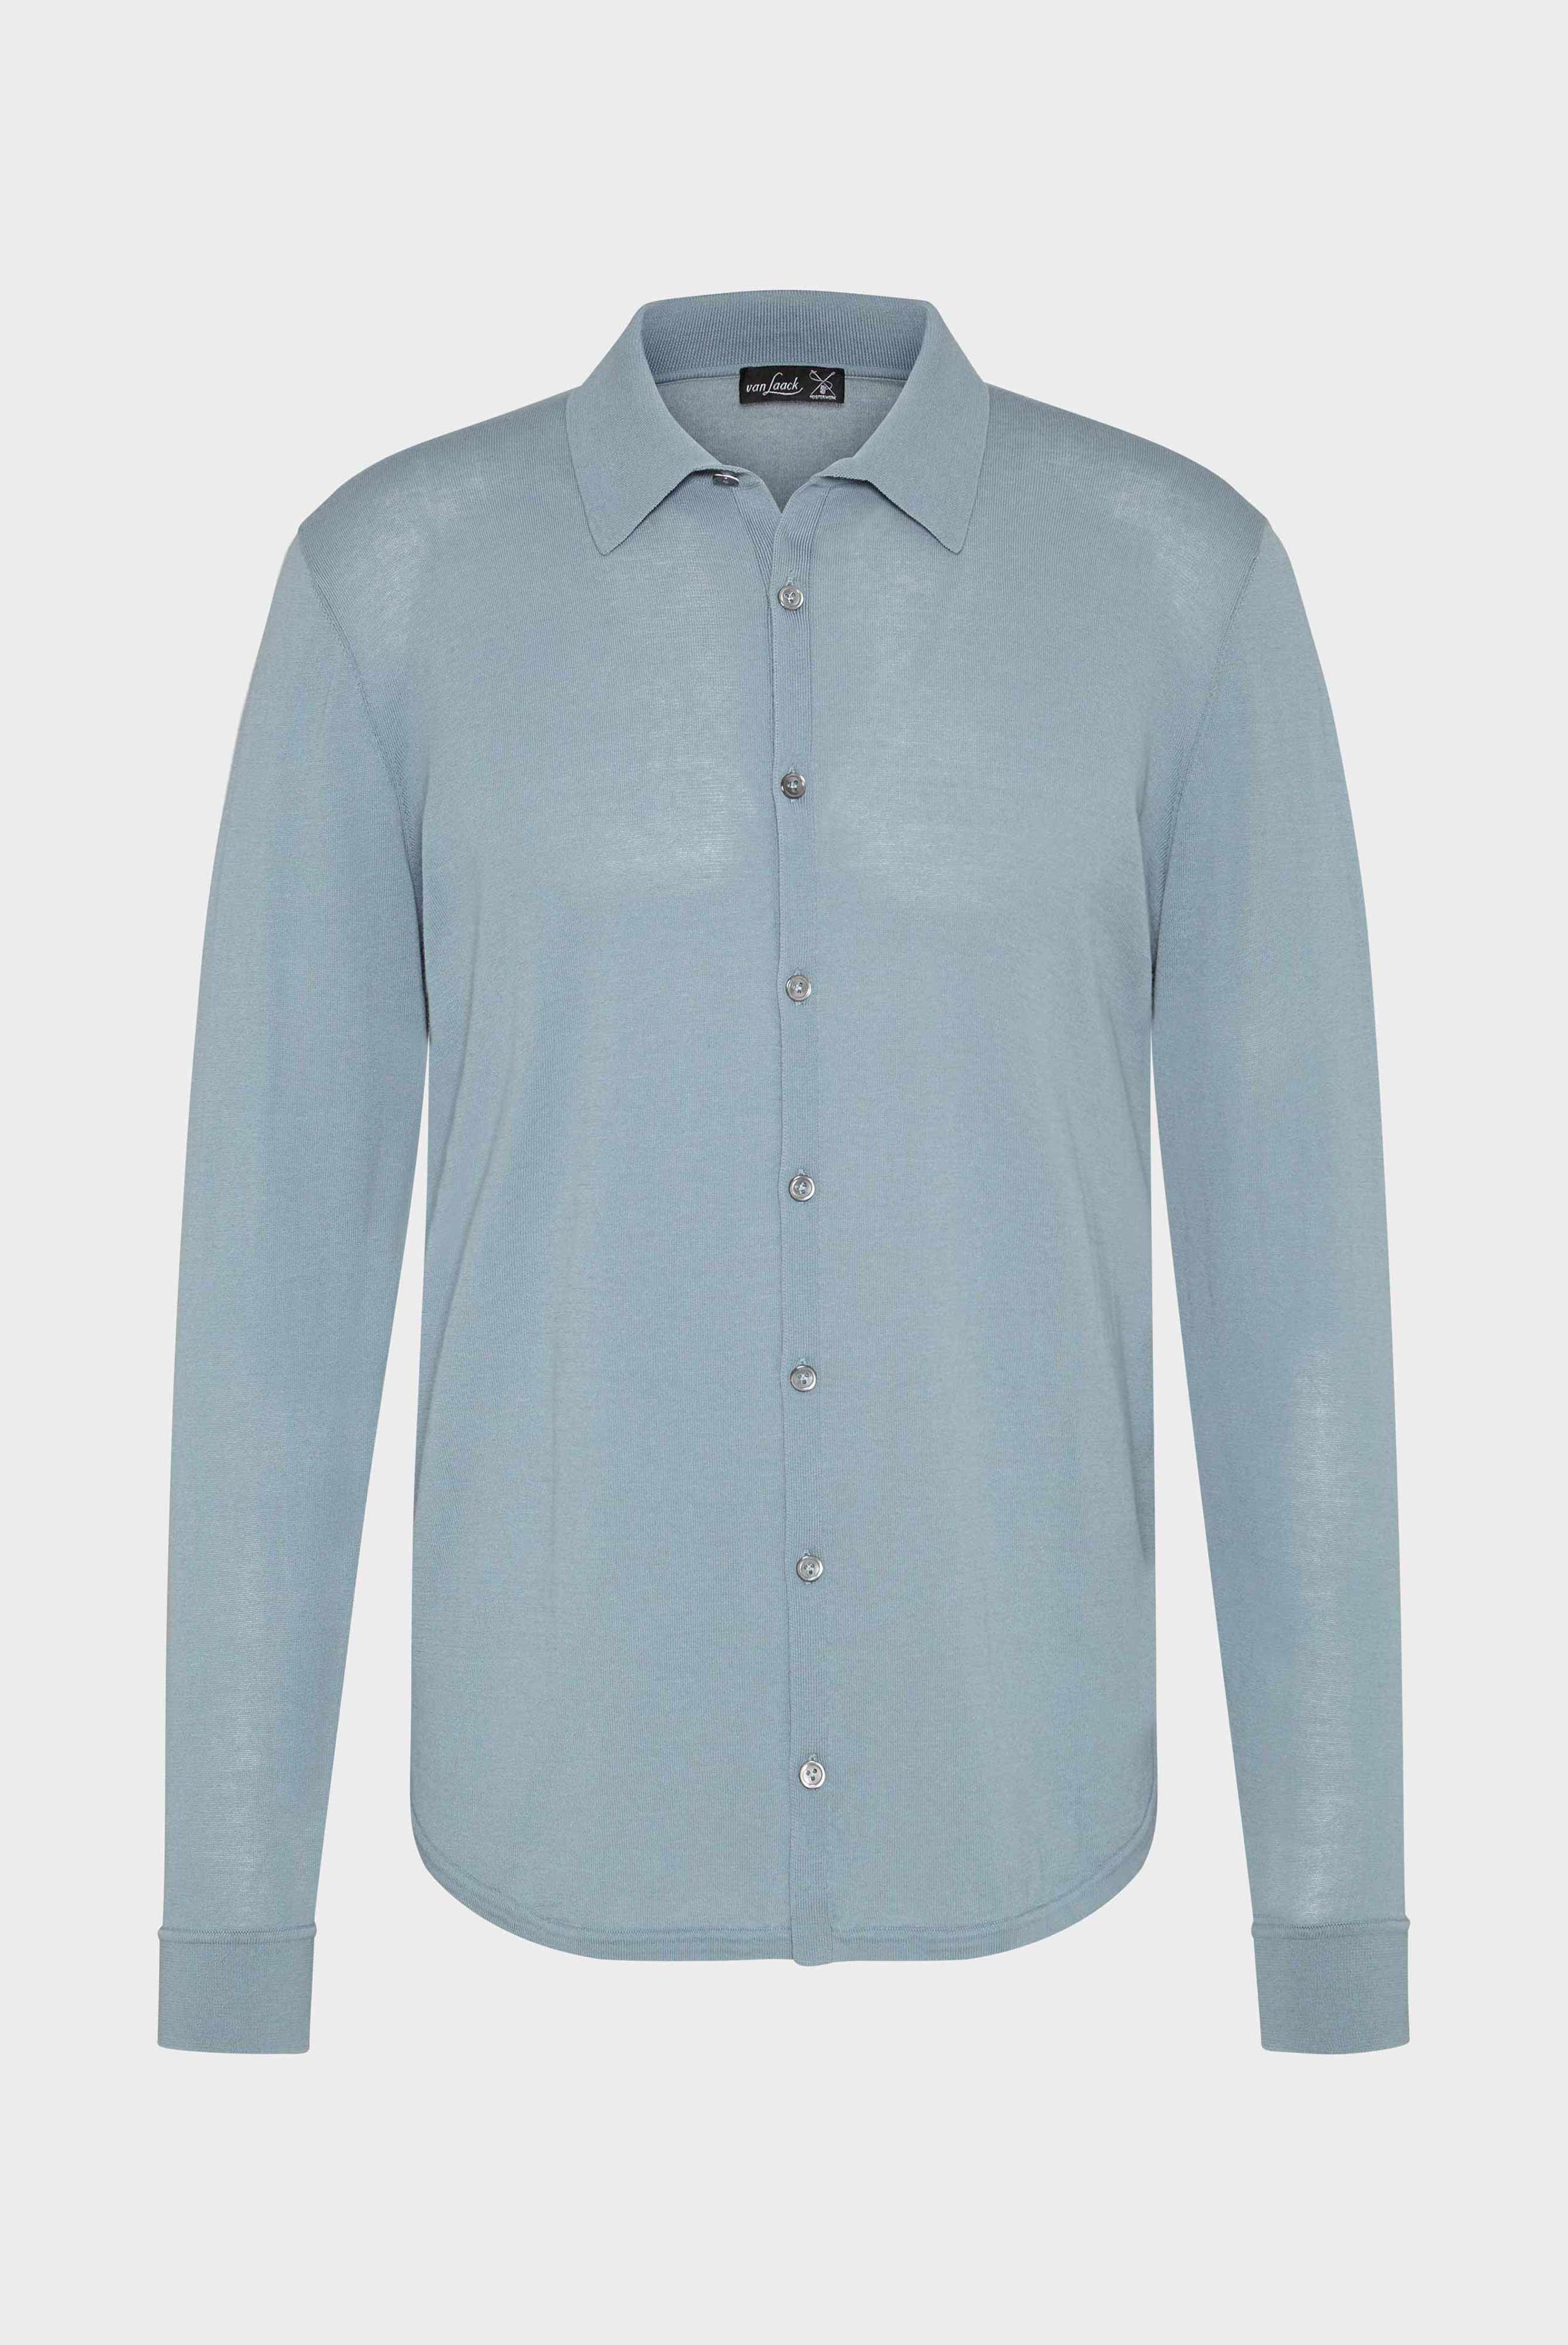 Bügelleichte Hemden+Strick Hemd aus Air Cotton+82.8611..S00174.730.X3L